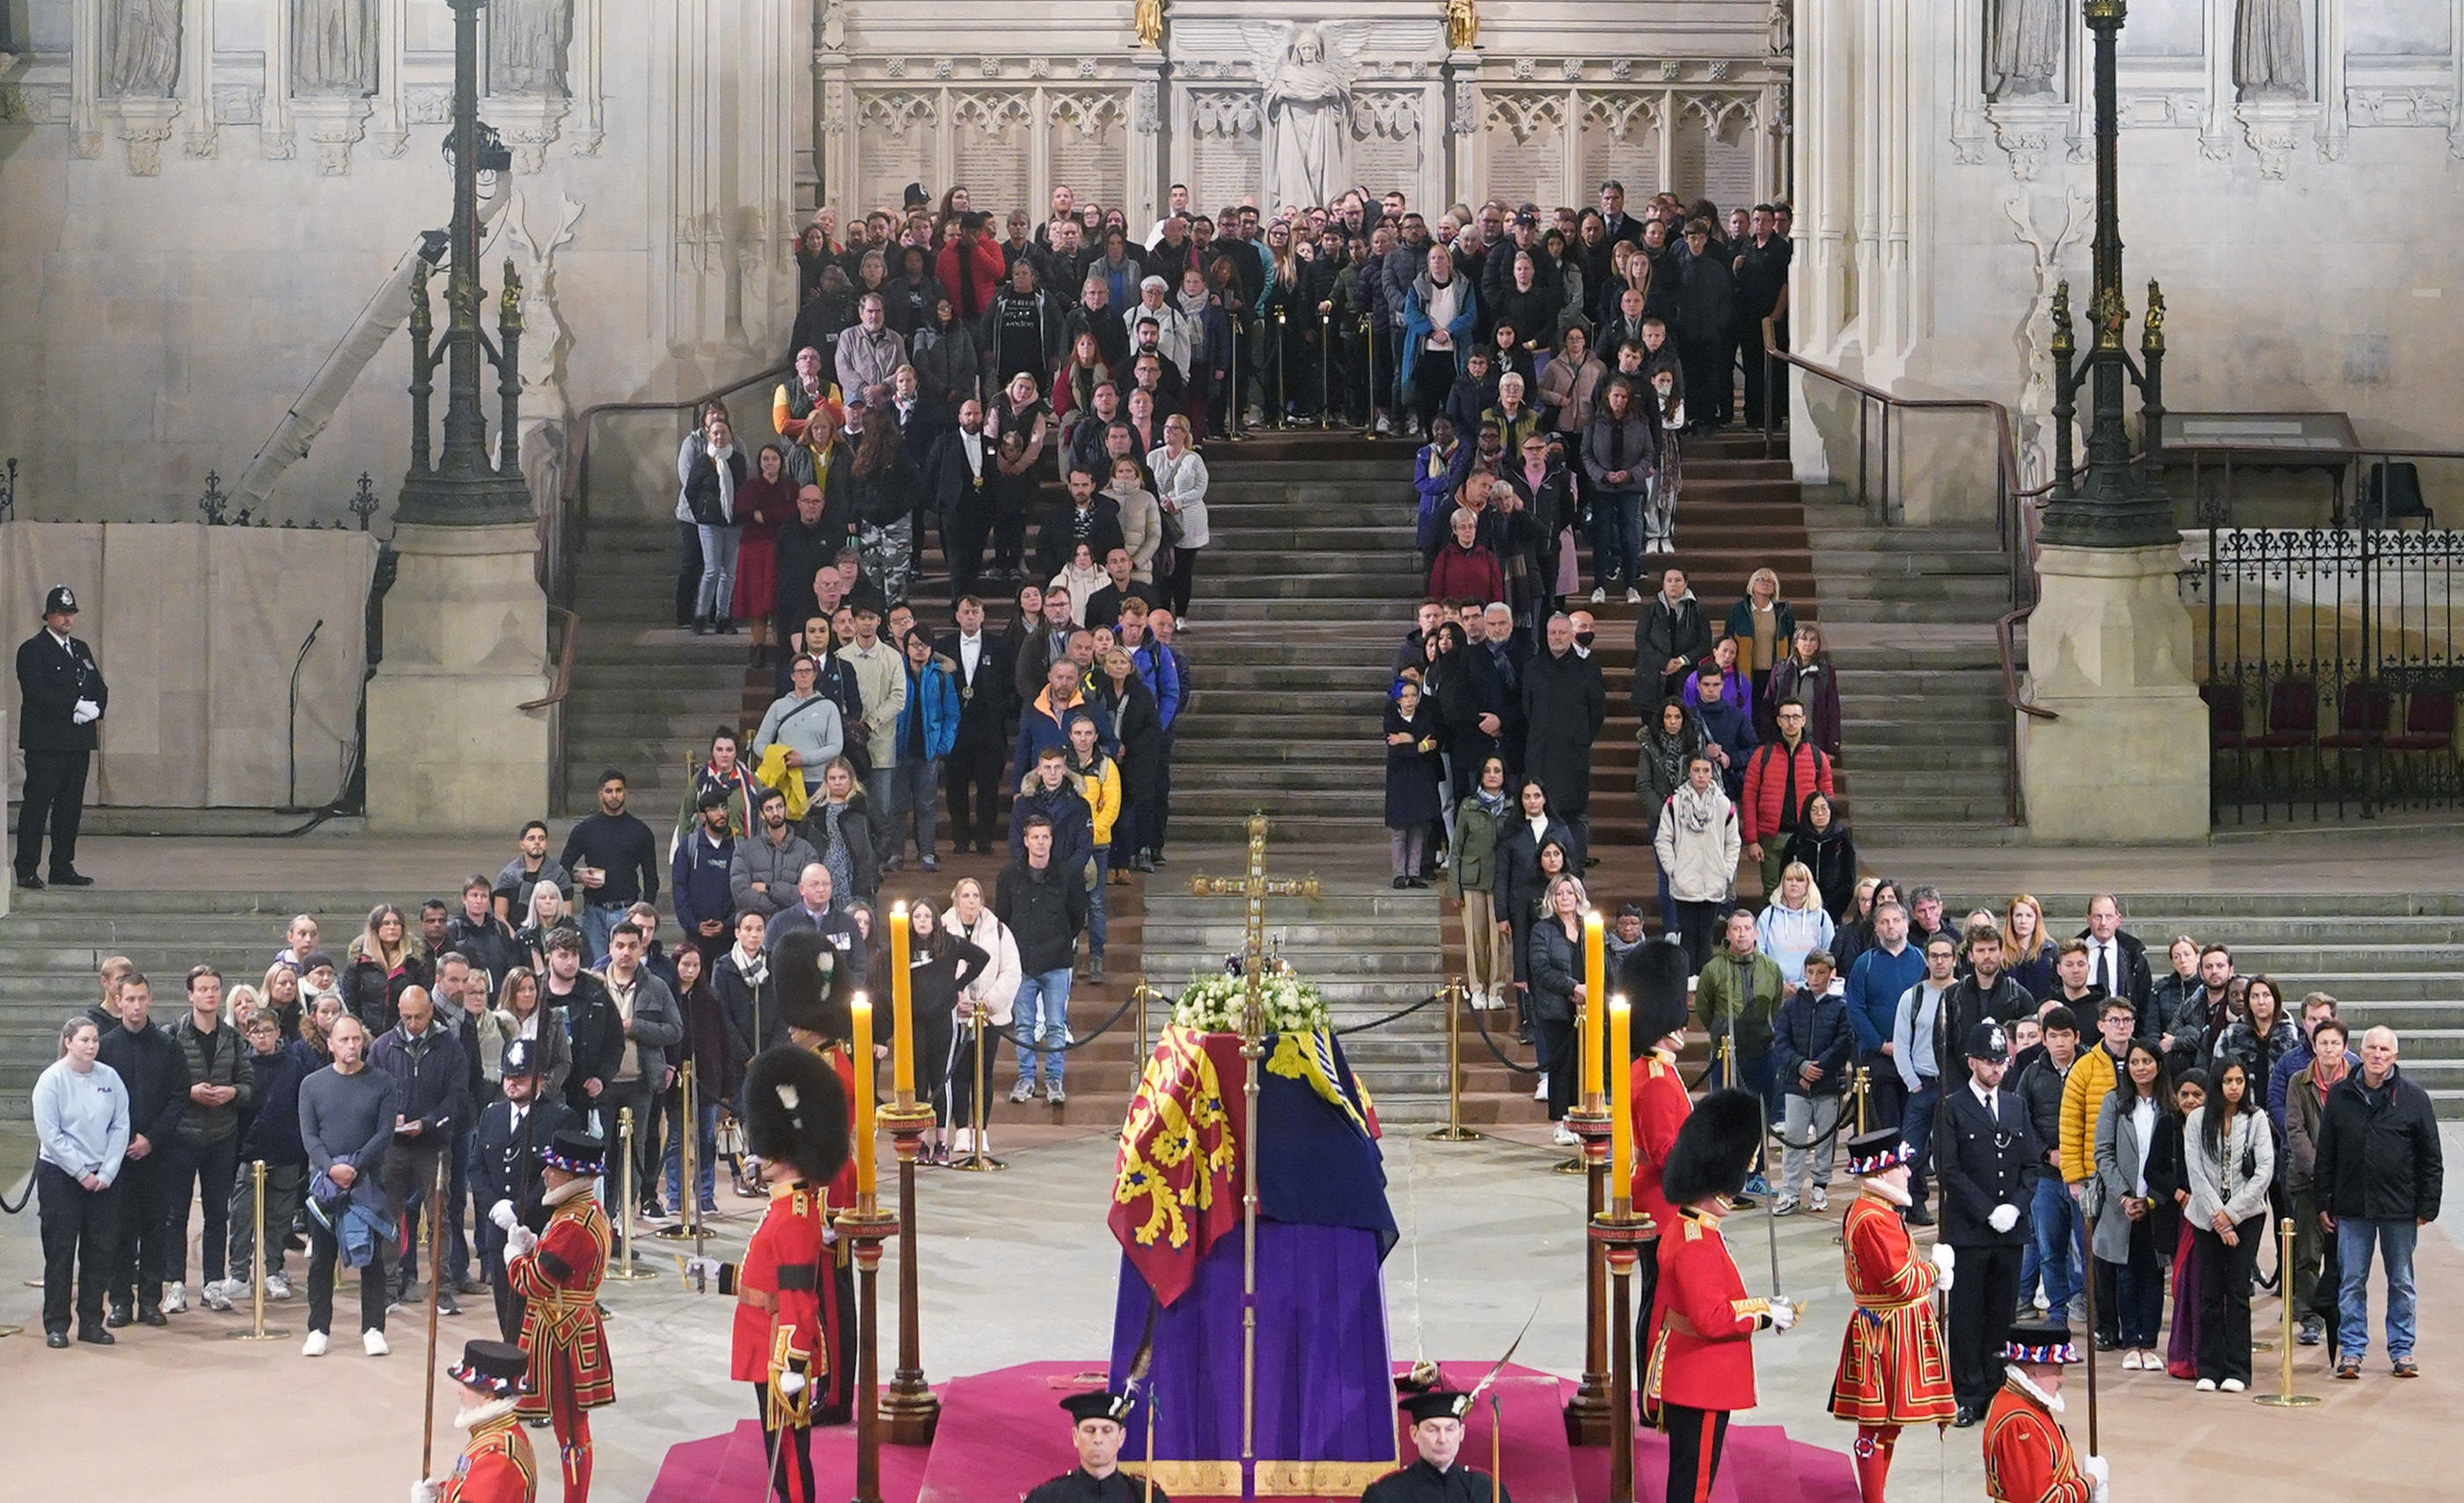 Londres (Royaume-Uni), lundi. Ces personnes photographiées à 5h03 sont parmi les dernières à avoir fait de longues heures de queue pour approcher le cercueil d'Elizabeth II. Reuters/Pool/Yui Mok